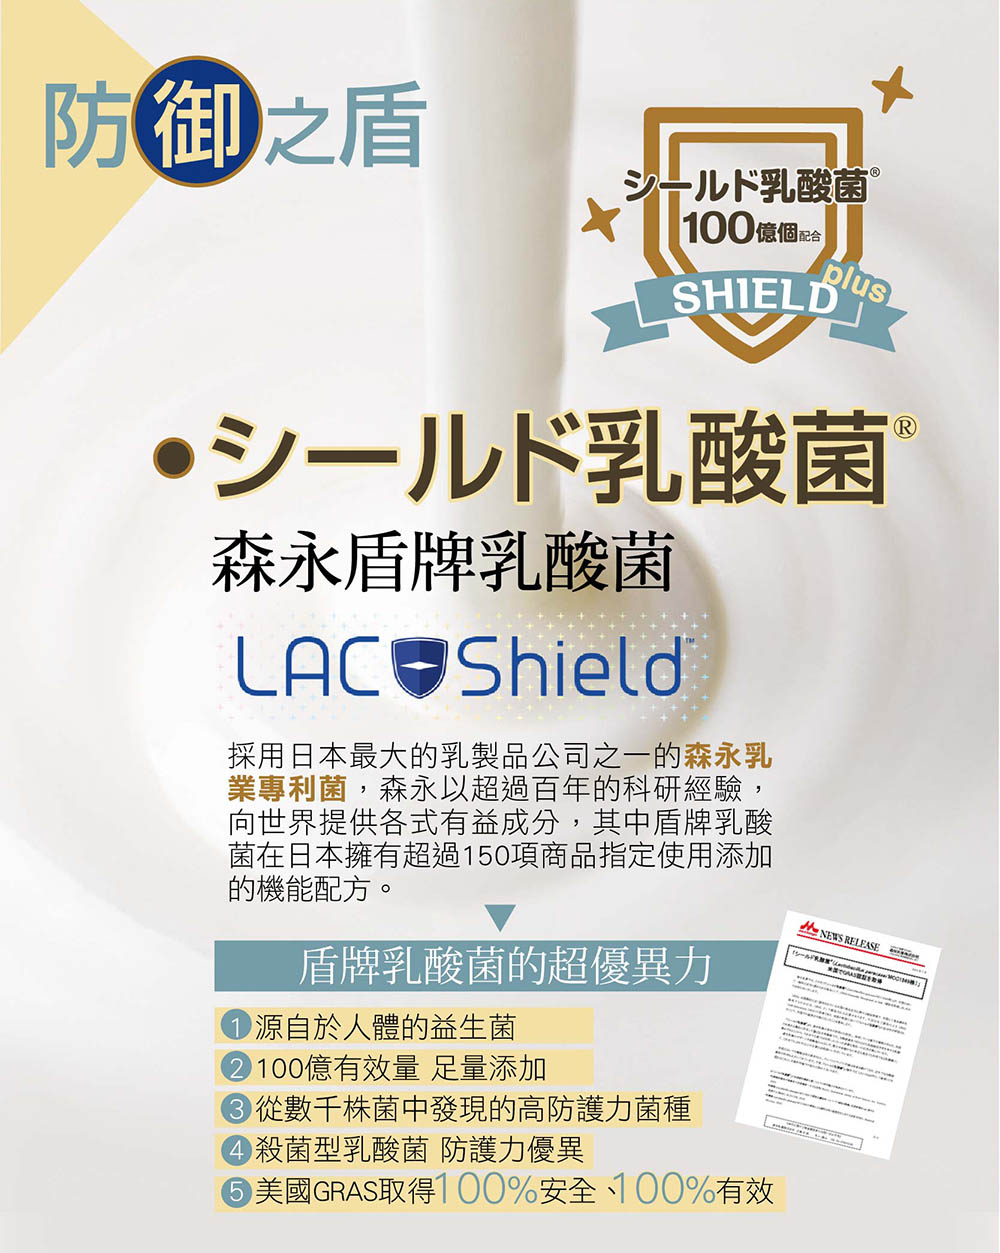 選用日本專利成份 盾牌乳酸菌 獲得GRAS認證